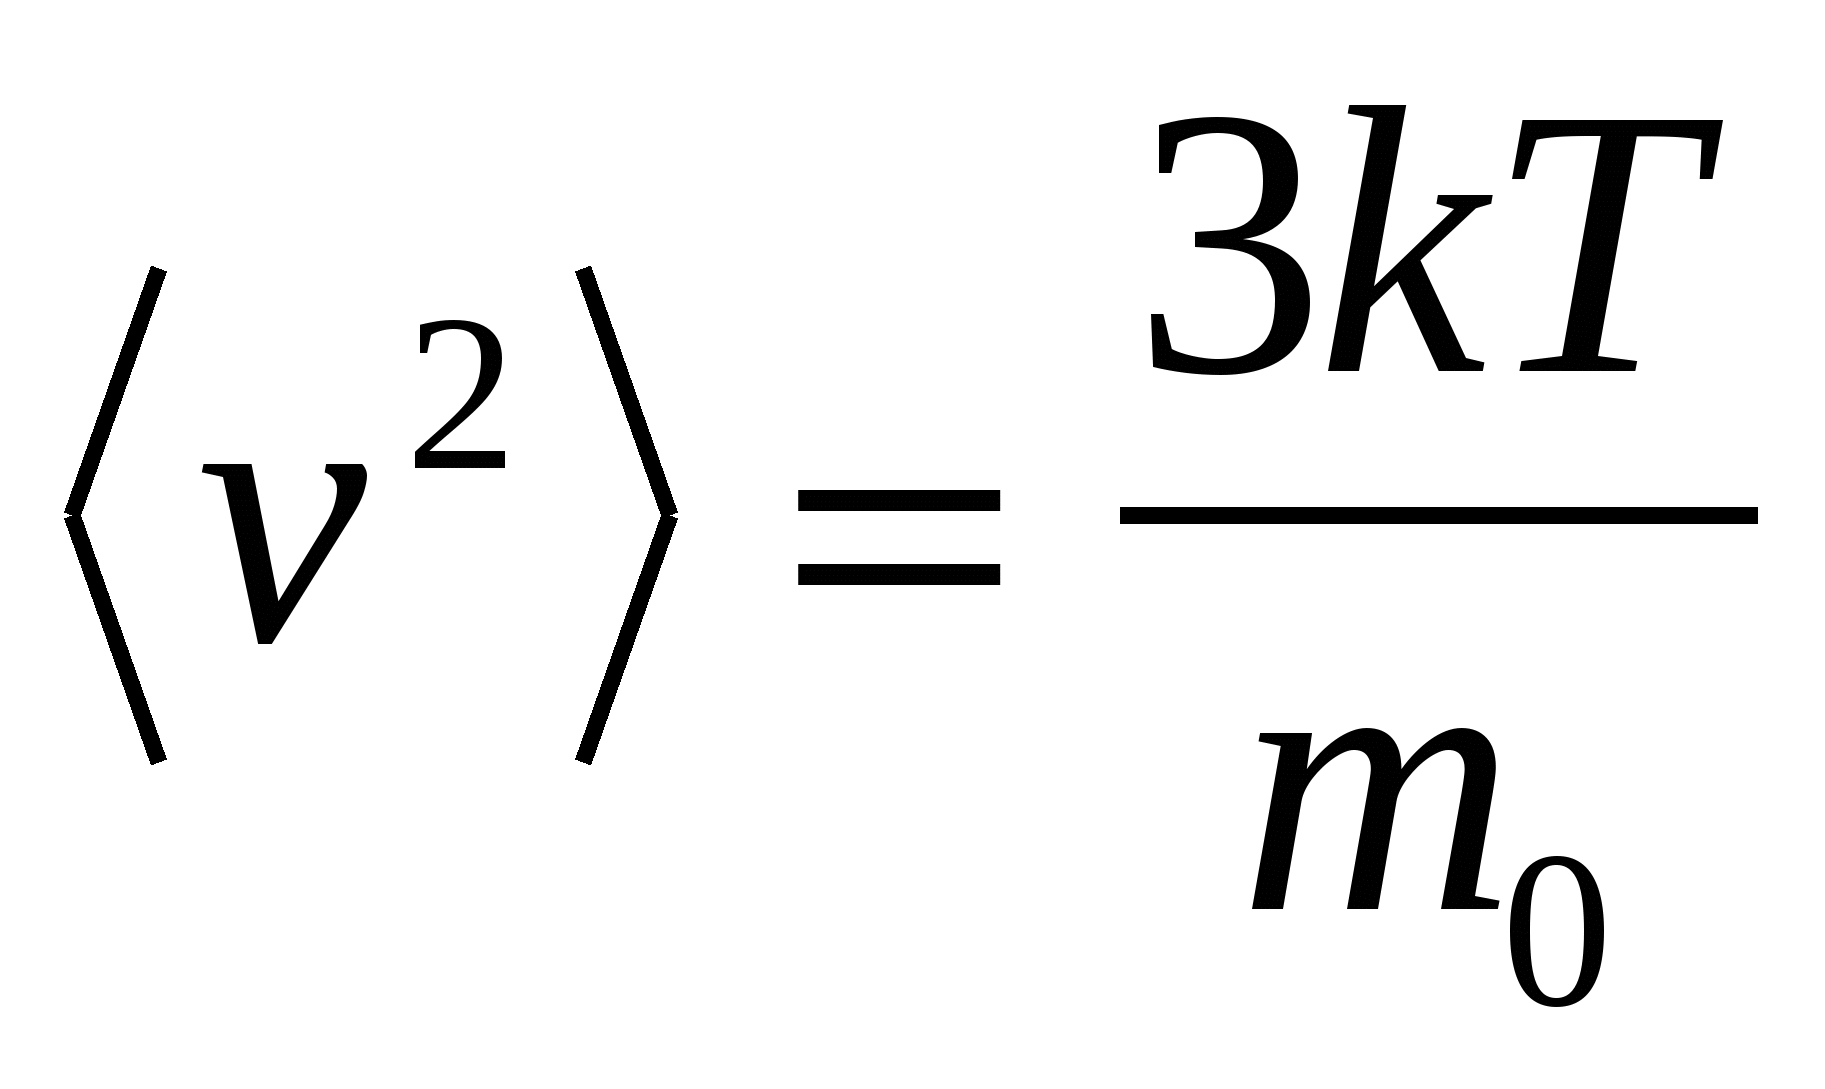 Скорость газа формула. Формула среднеквадратичной скорости движения молекул. Средний квадрат скорости молекул формула. Среднеквадратичная скорость молекул формула. Формула средней квадратичной скорости движения молекул газа.